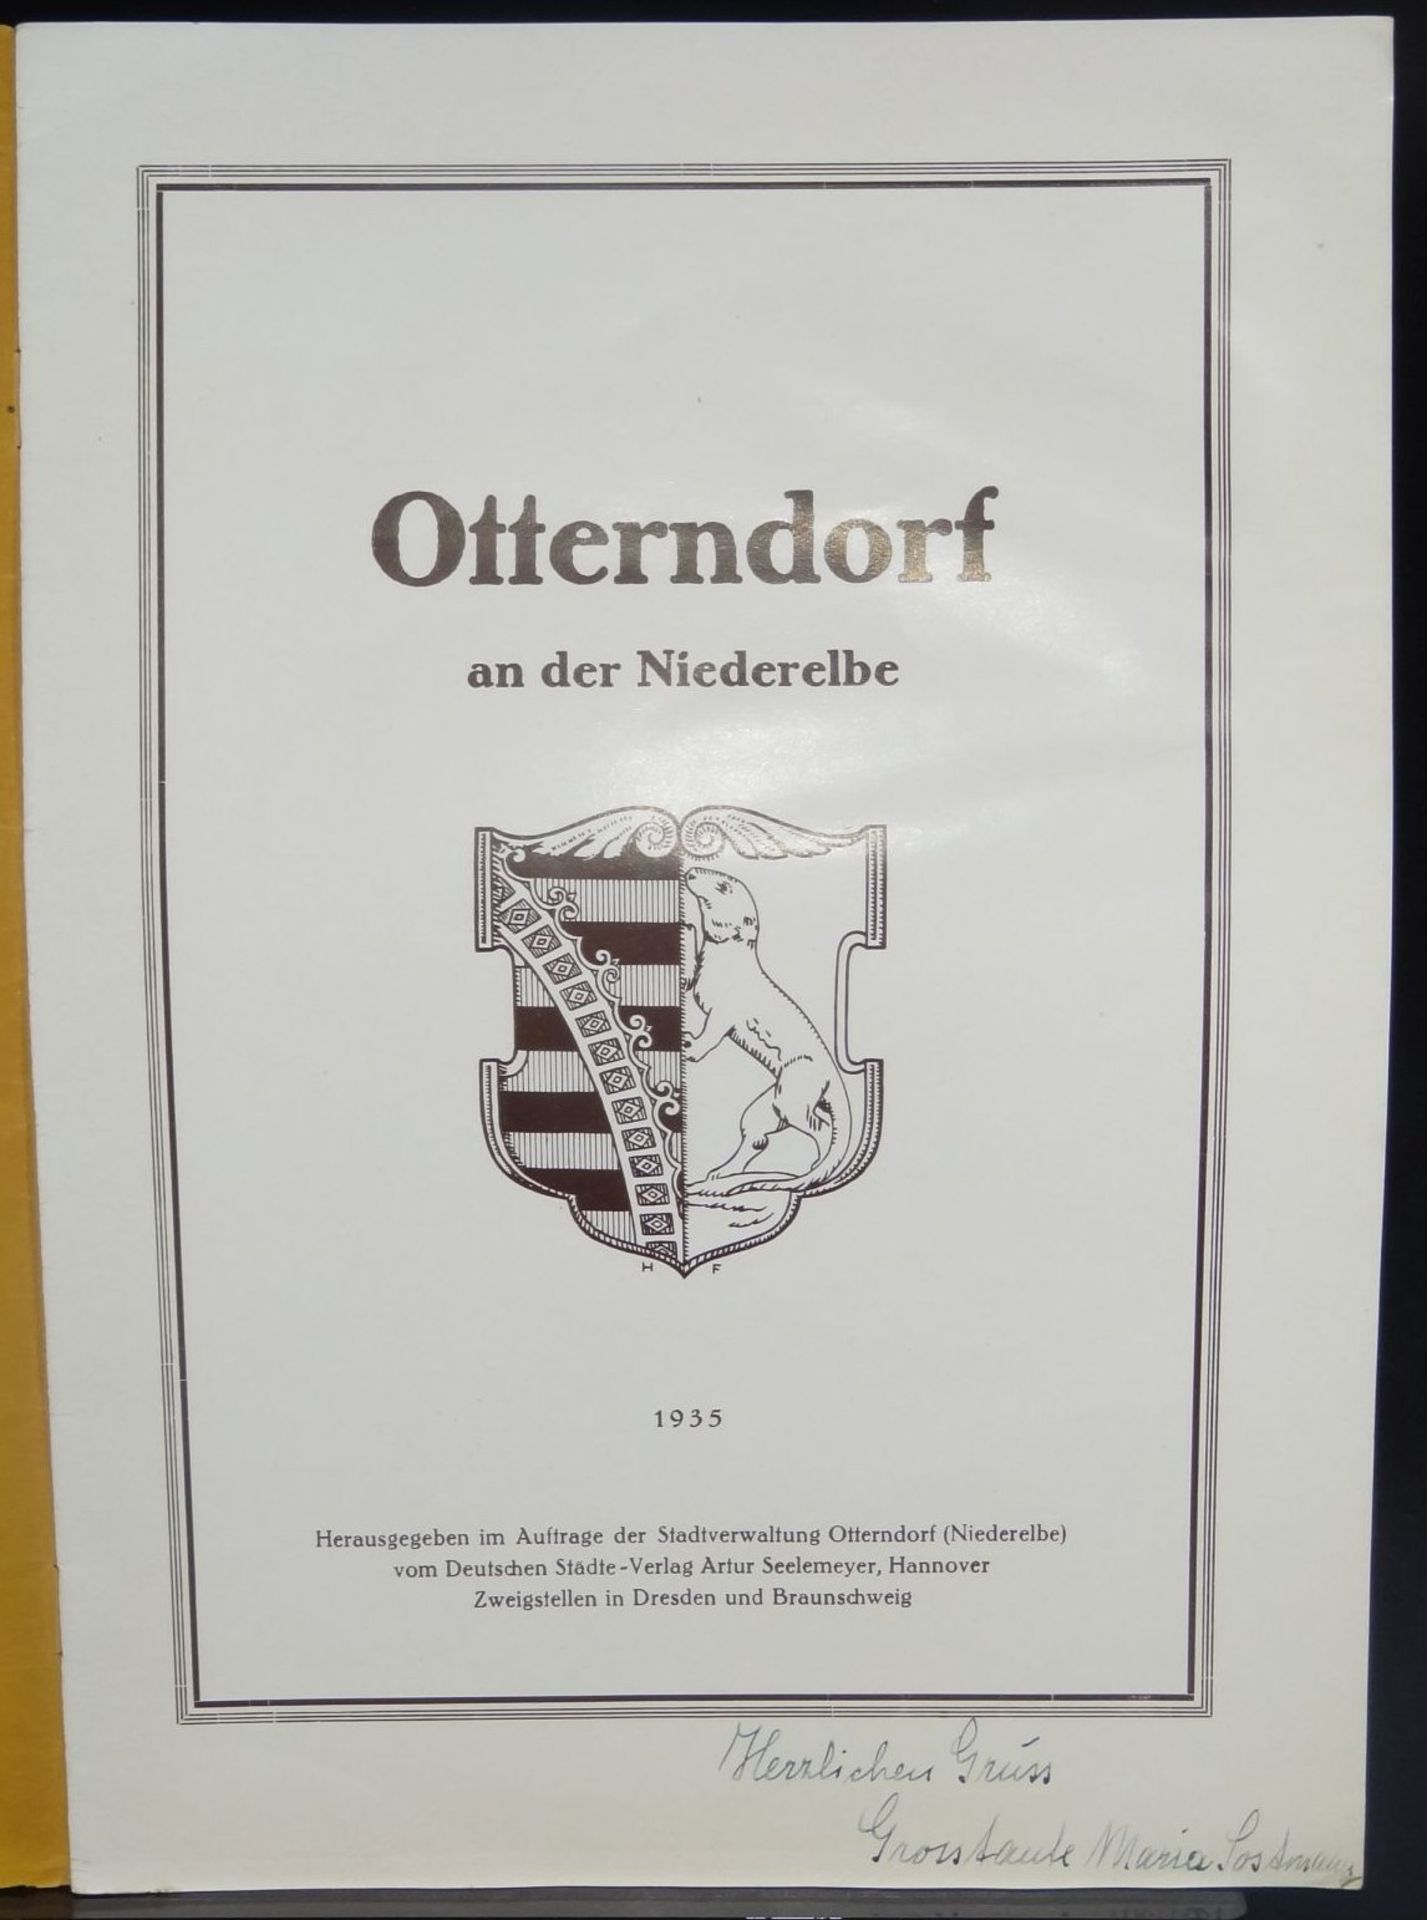 Broschüre "Otterndorf an der Niederelbe" 1935, PP, 30x21 c- - -22.61 % buyer's premium on the hammer - Bild 2 aus 6